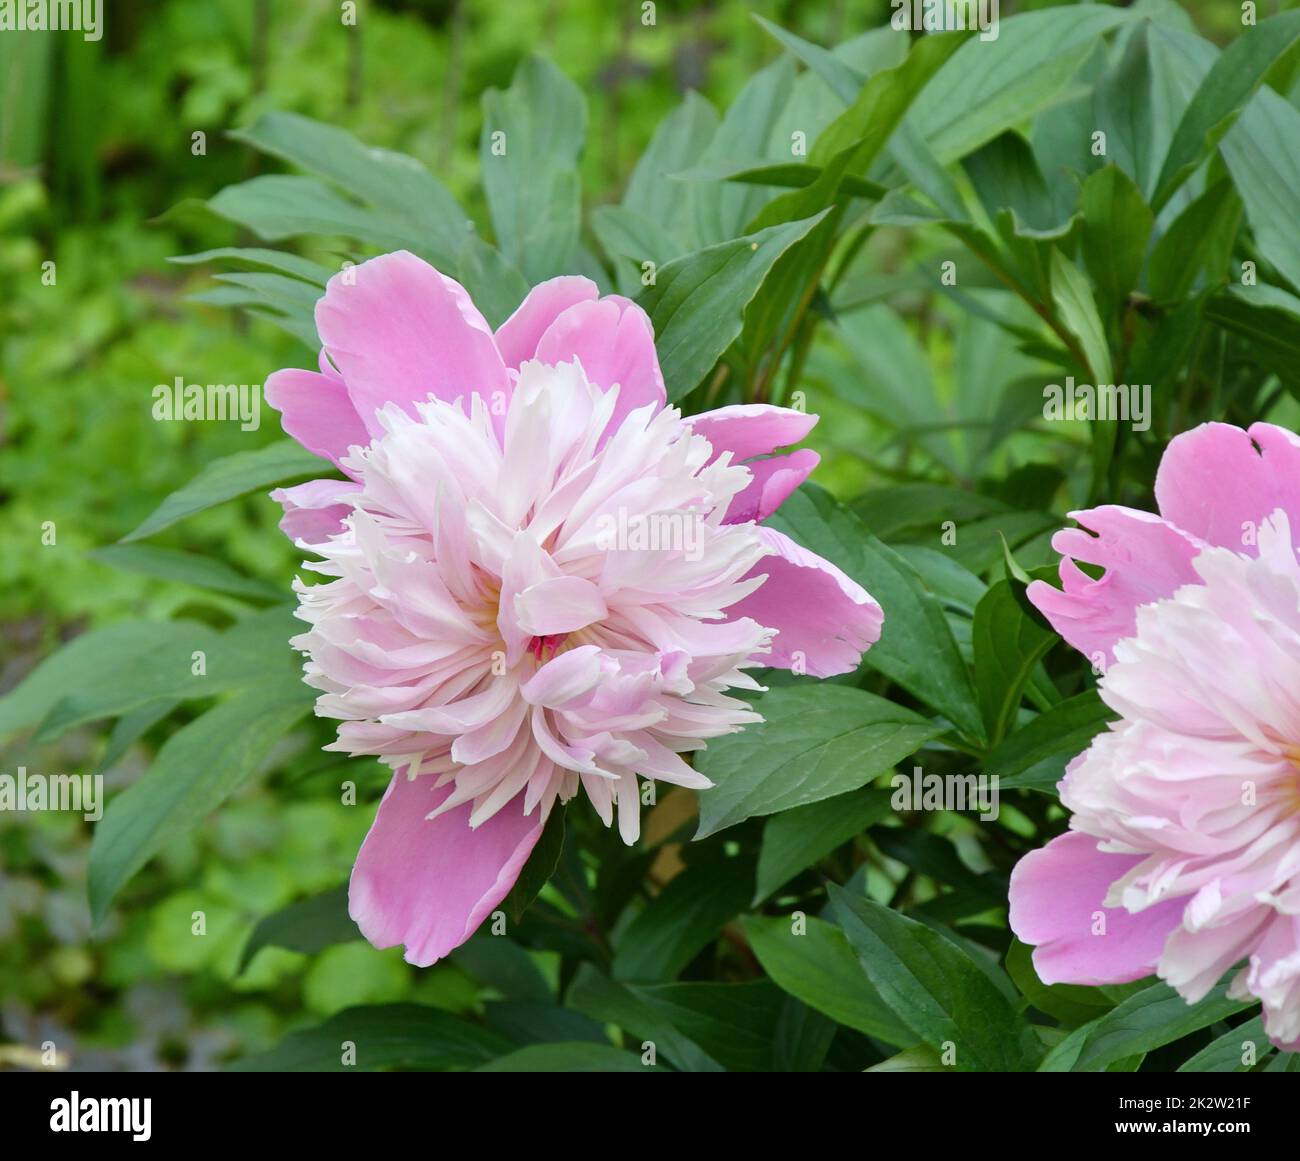 Fleur de pivoine (lat. Paeonia) de couleur blanc-rose Banque D'Images